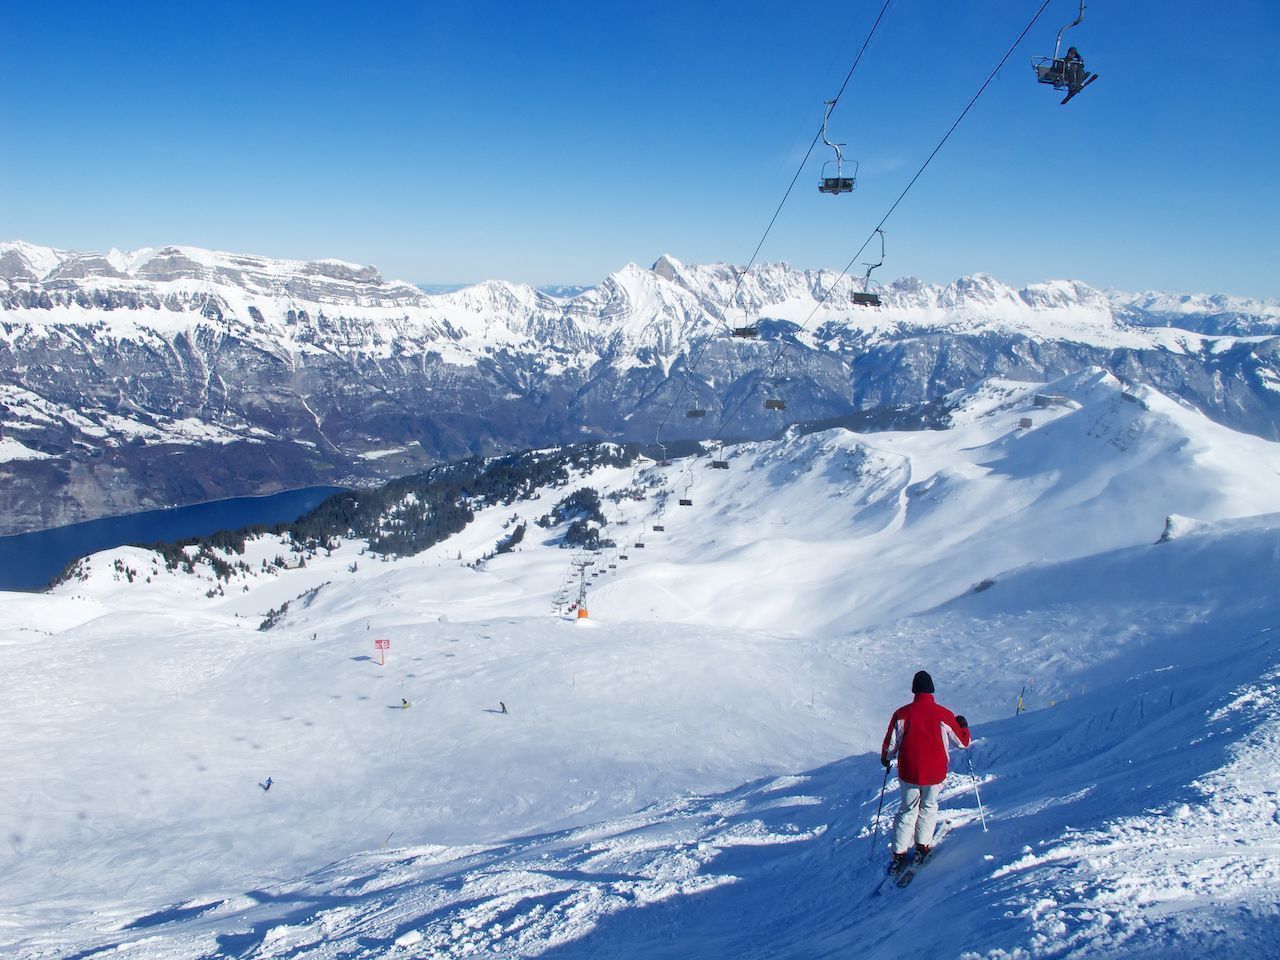 The Best Local Ski Resorts Near Zurich, Switzerland